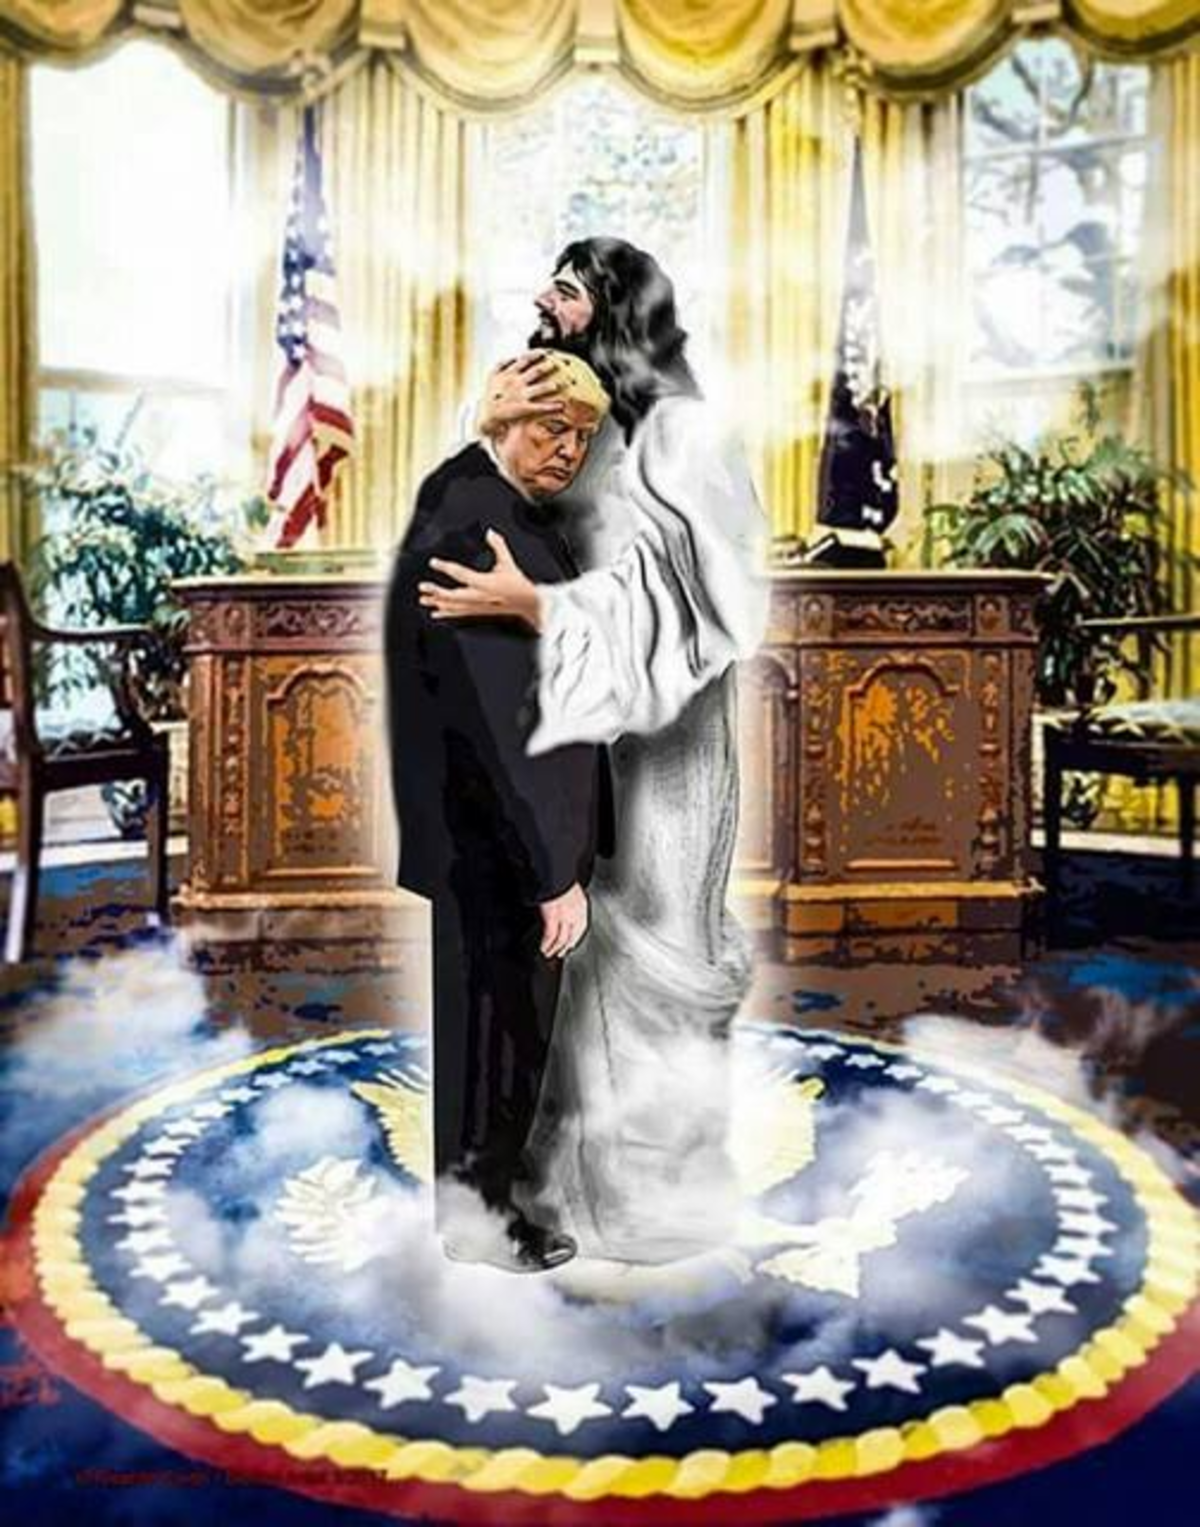 Ιεροσυλία ή γραφικότητα; Ο Ντόναλντ Τραμπ στην αγκαλιά του… Ιησού! [pic]